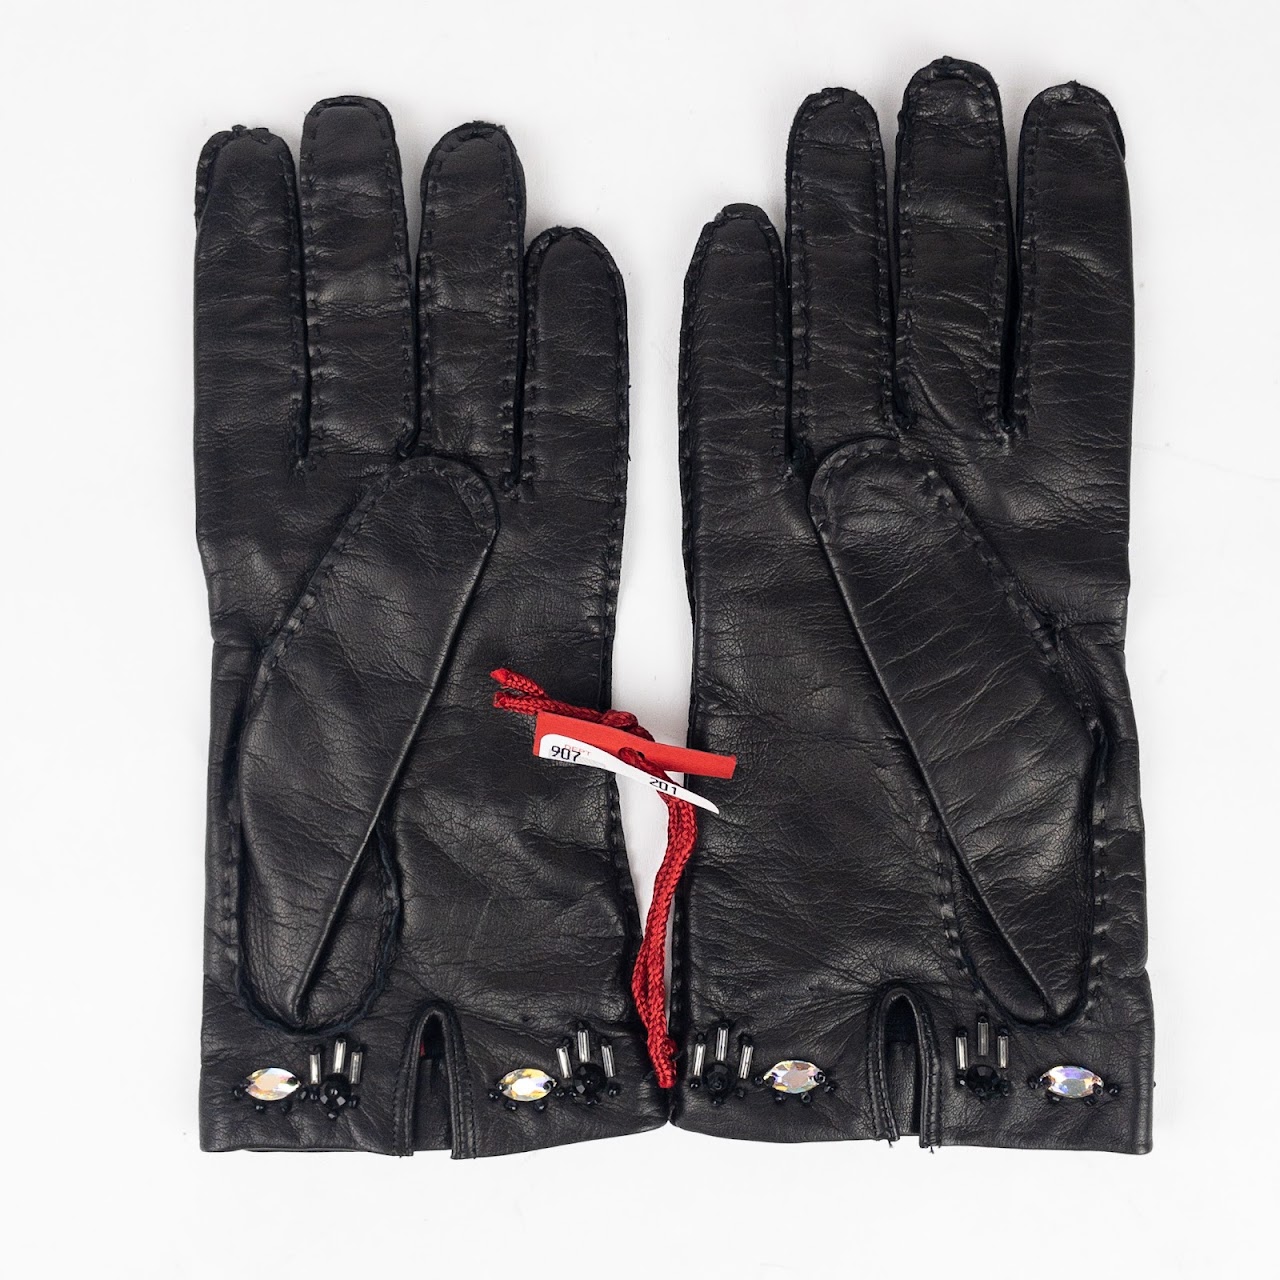 Valentino Garavani Black Leather Embellished Gloves